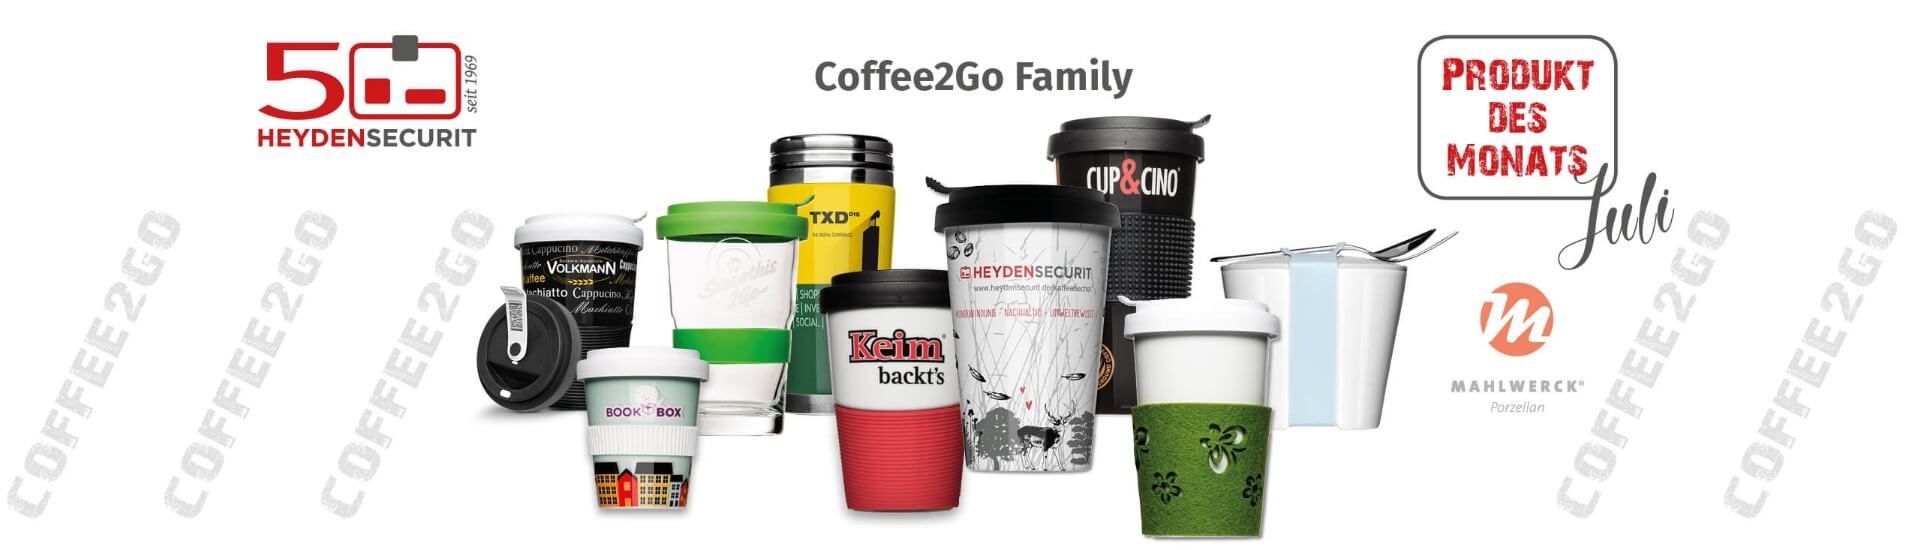 Unser Produkt des Monats Juli sind die umweltfreundlichen Coffee2Go-Becher aus Porzellan!